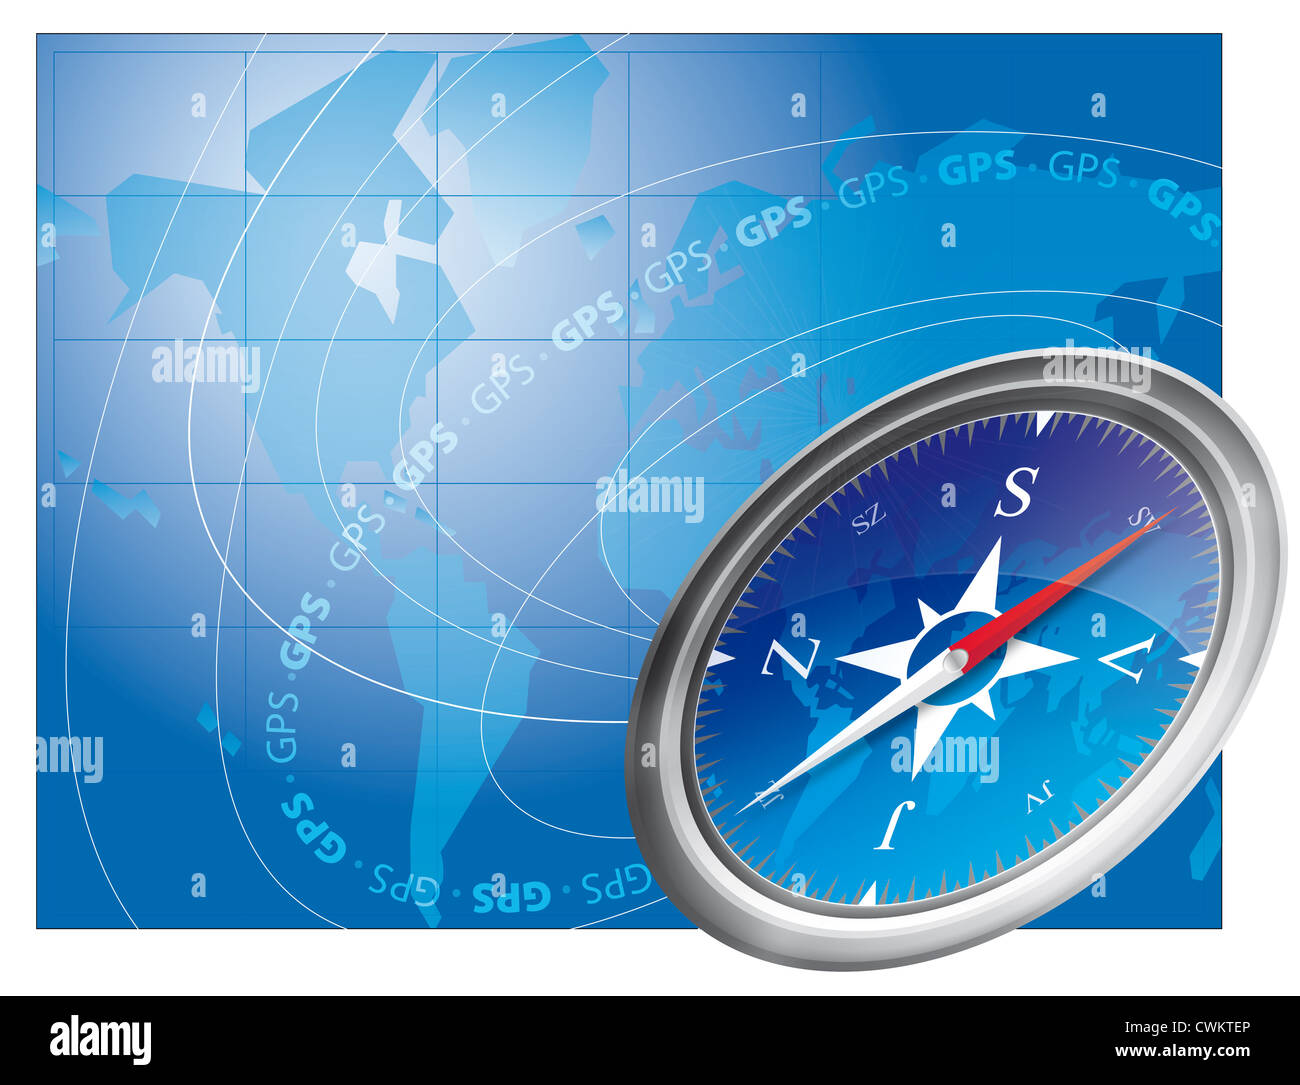 Navegación GPS: Sistema de posicionamiento global Fotografía de stock -  Alamy